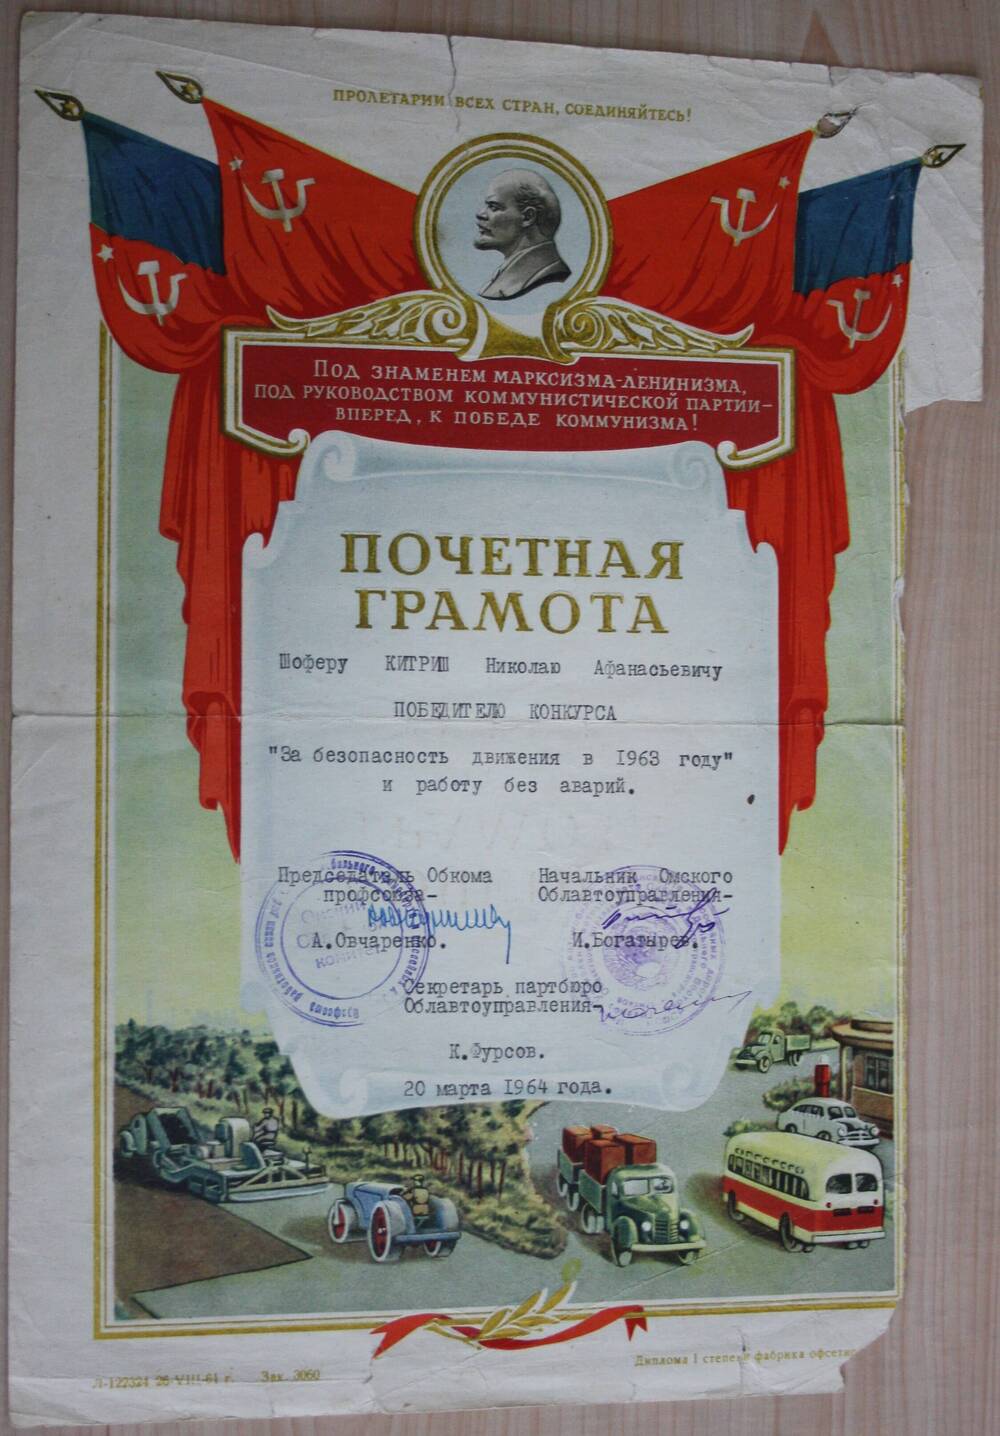 Почетная грамота Китришу Н.А. шоферу за безопасность движения в 1963 году и работу без аварий. 20 марта 1964 г.